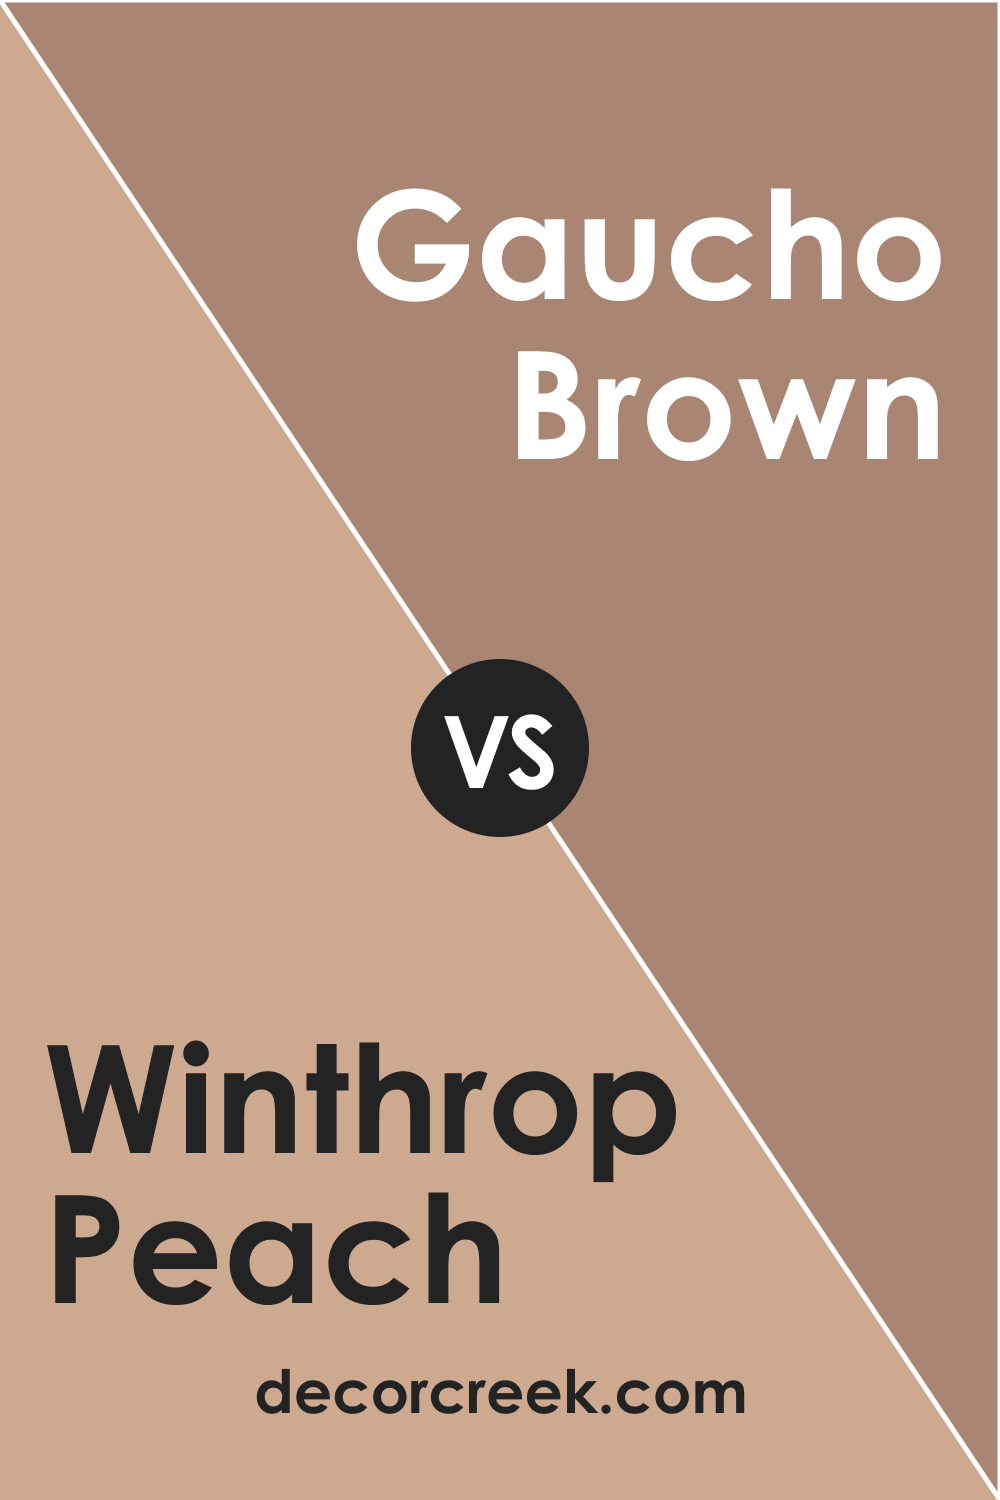 Winthrop Peach HC-55 vs. BM 2096-40 Gaucho Brown